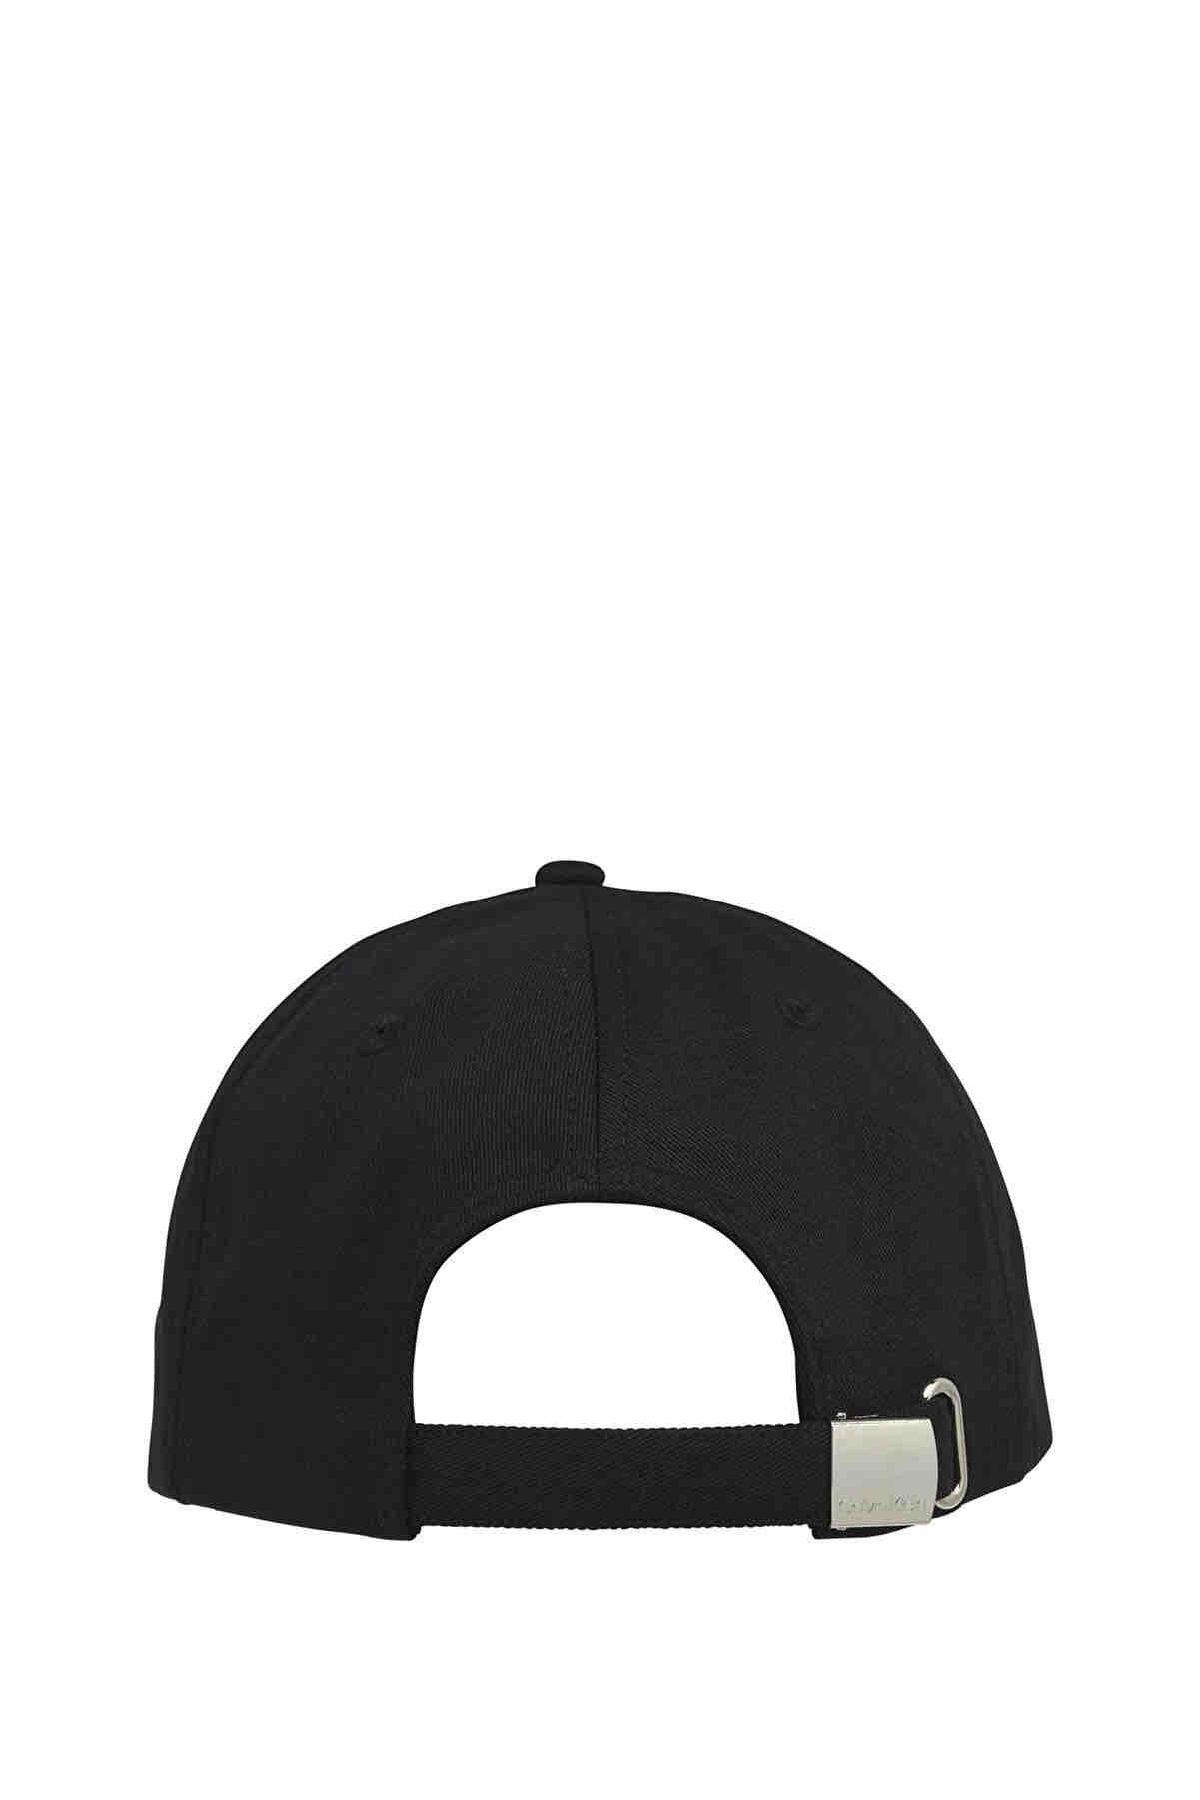 کلاه اسپرت یونیسکس Calvin Klein کد.1116